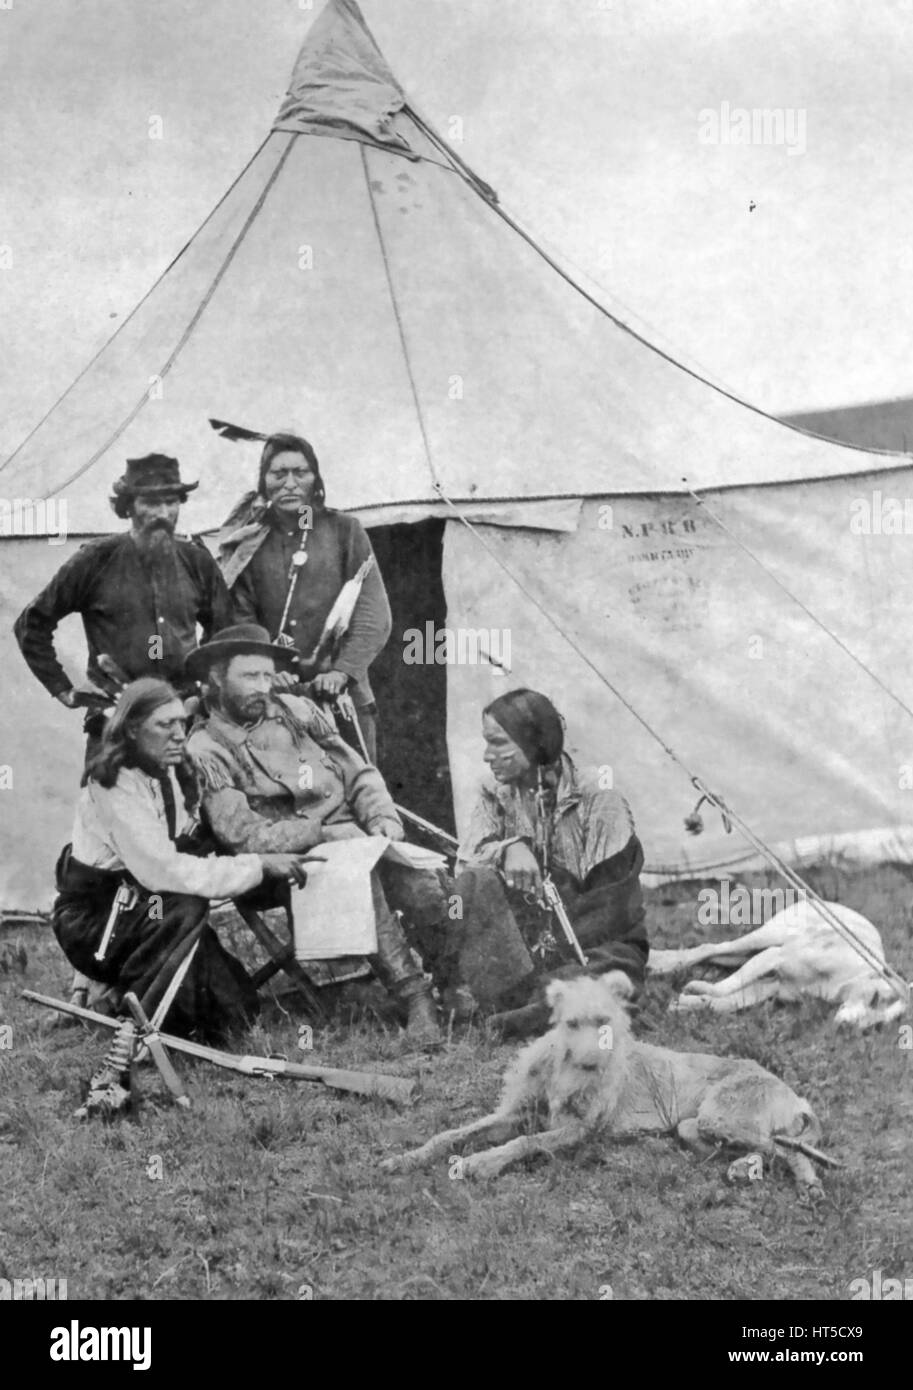 GEORGE ARMSTRONG CUSTER (1836 – 1876) amerikanische Kavallerie Kommandant während verantwortlich für Arbeitnehmerschutz Bau der Northern Pacific Railroad in Montana ca. 1873.  Beachten Sie die Initialen N.P.R.R. auf das Zelt. Stockfoto